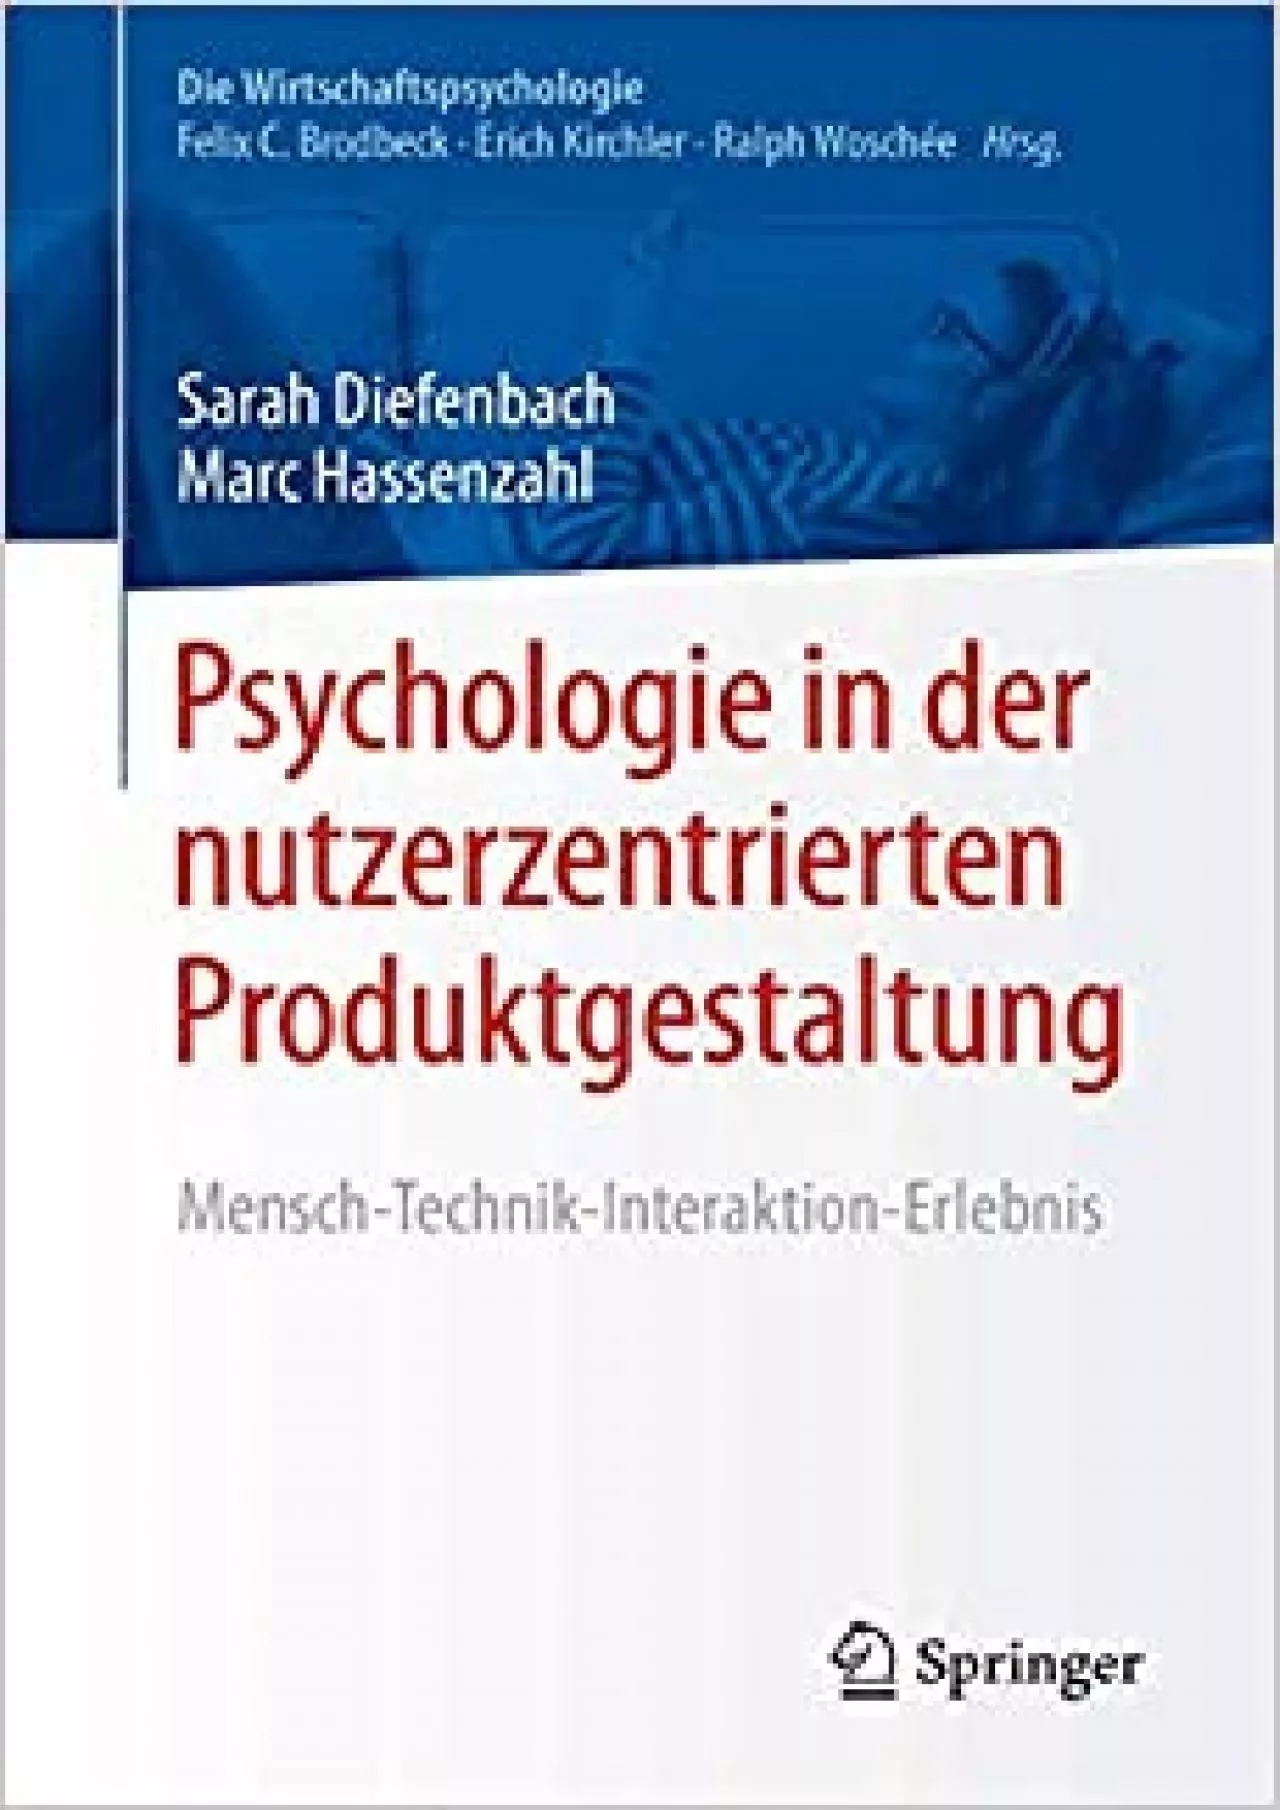 (READ)-Psychologie in der nutzerzentrierten Produktgestaltung Mensch-Technik-Interaktion-Erlebnis